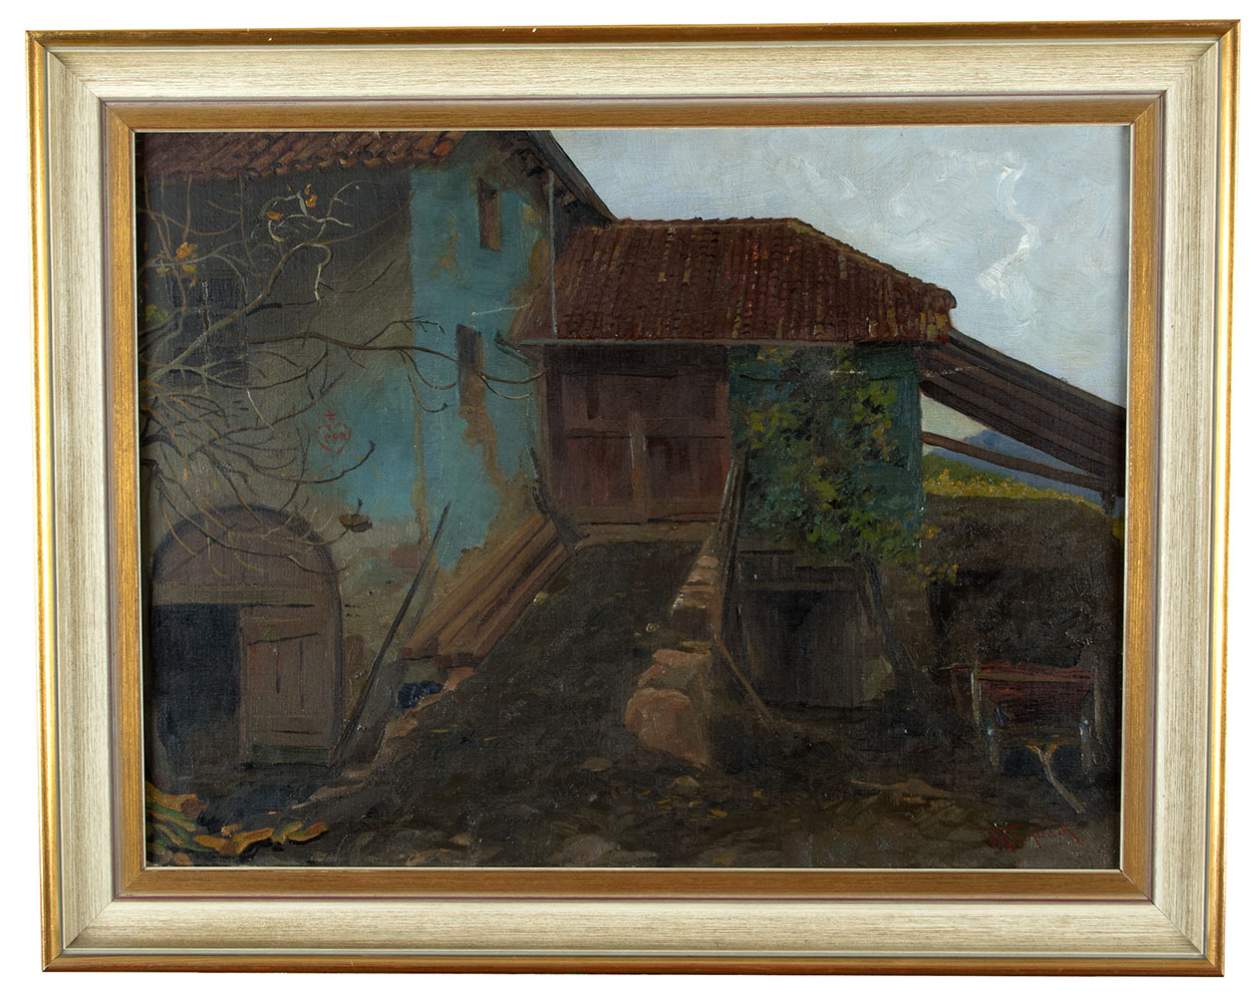 Johann Frank KIRCHBACH (1859-1912)"Gehöft im Gebirge"Gemälde Öl/Leinwand, 45 cm x 60 cm,verso